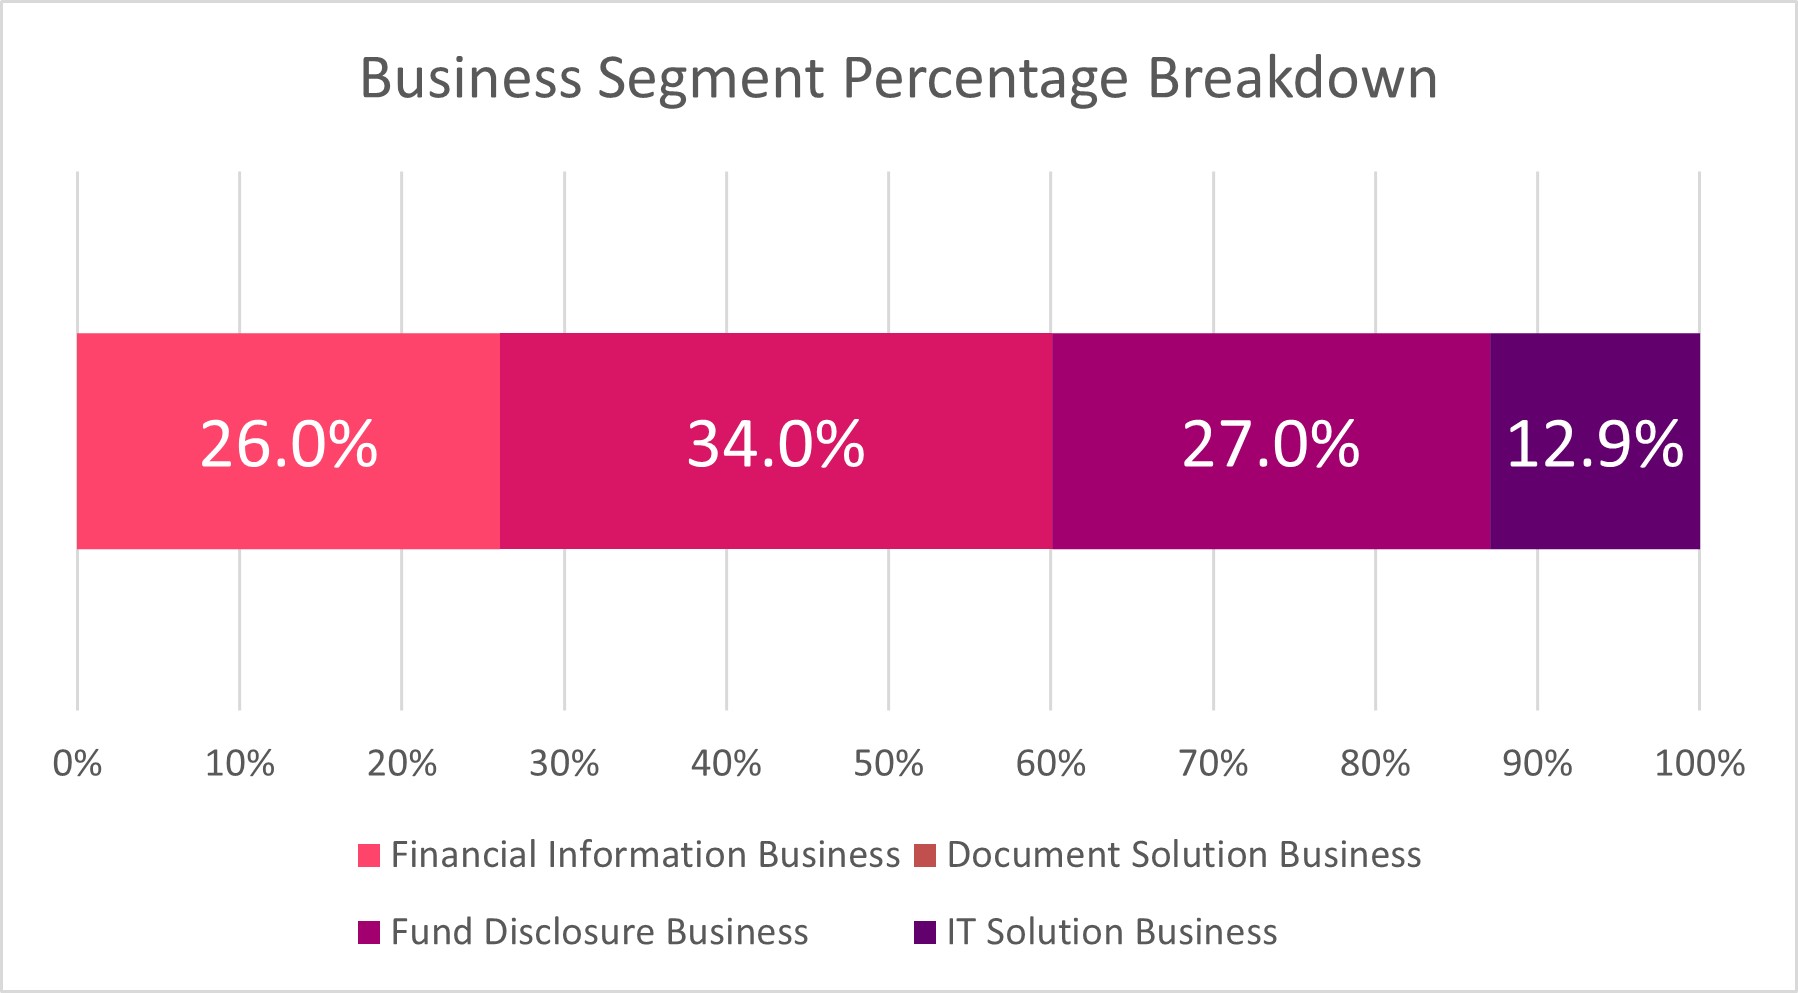 Percentage Breakdown by Business